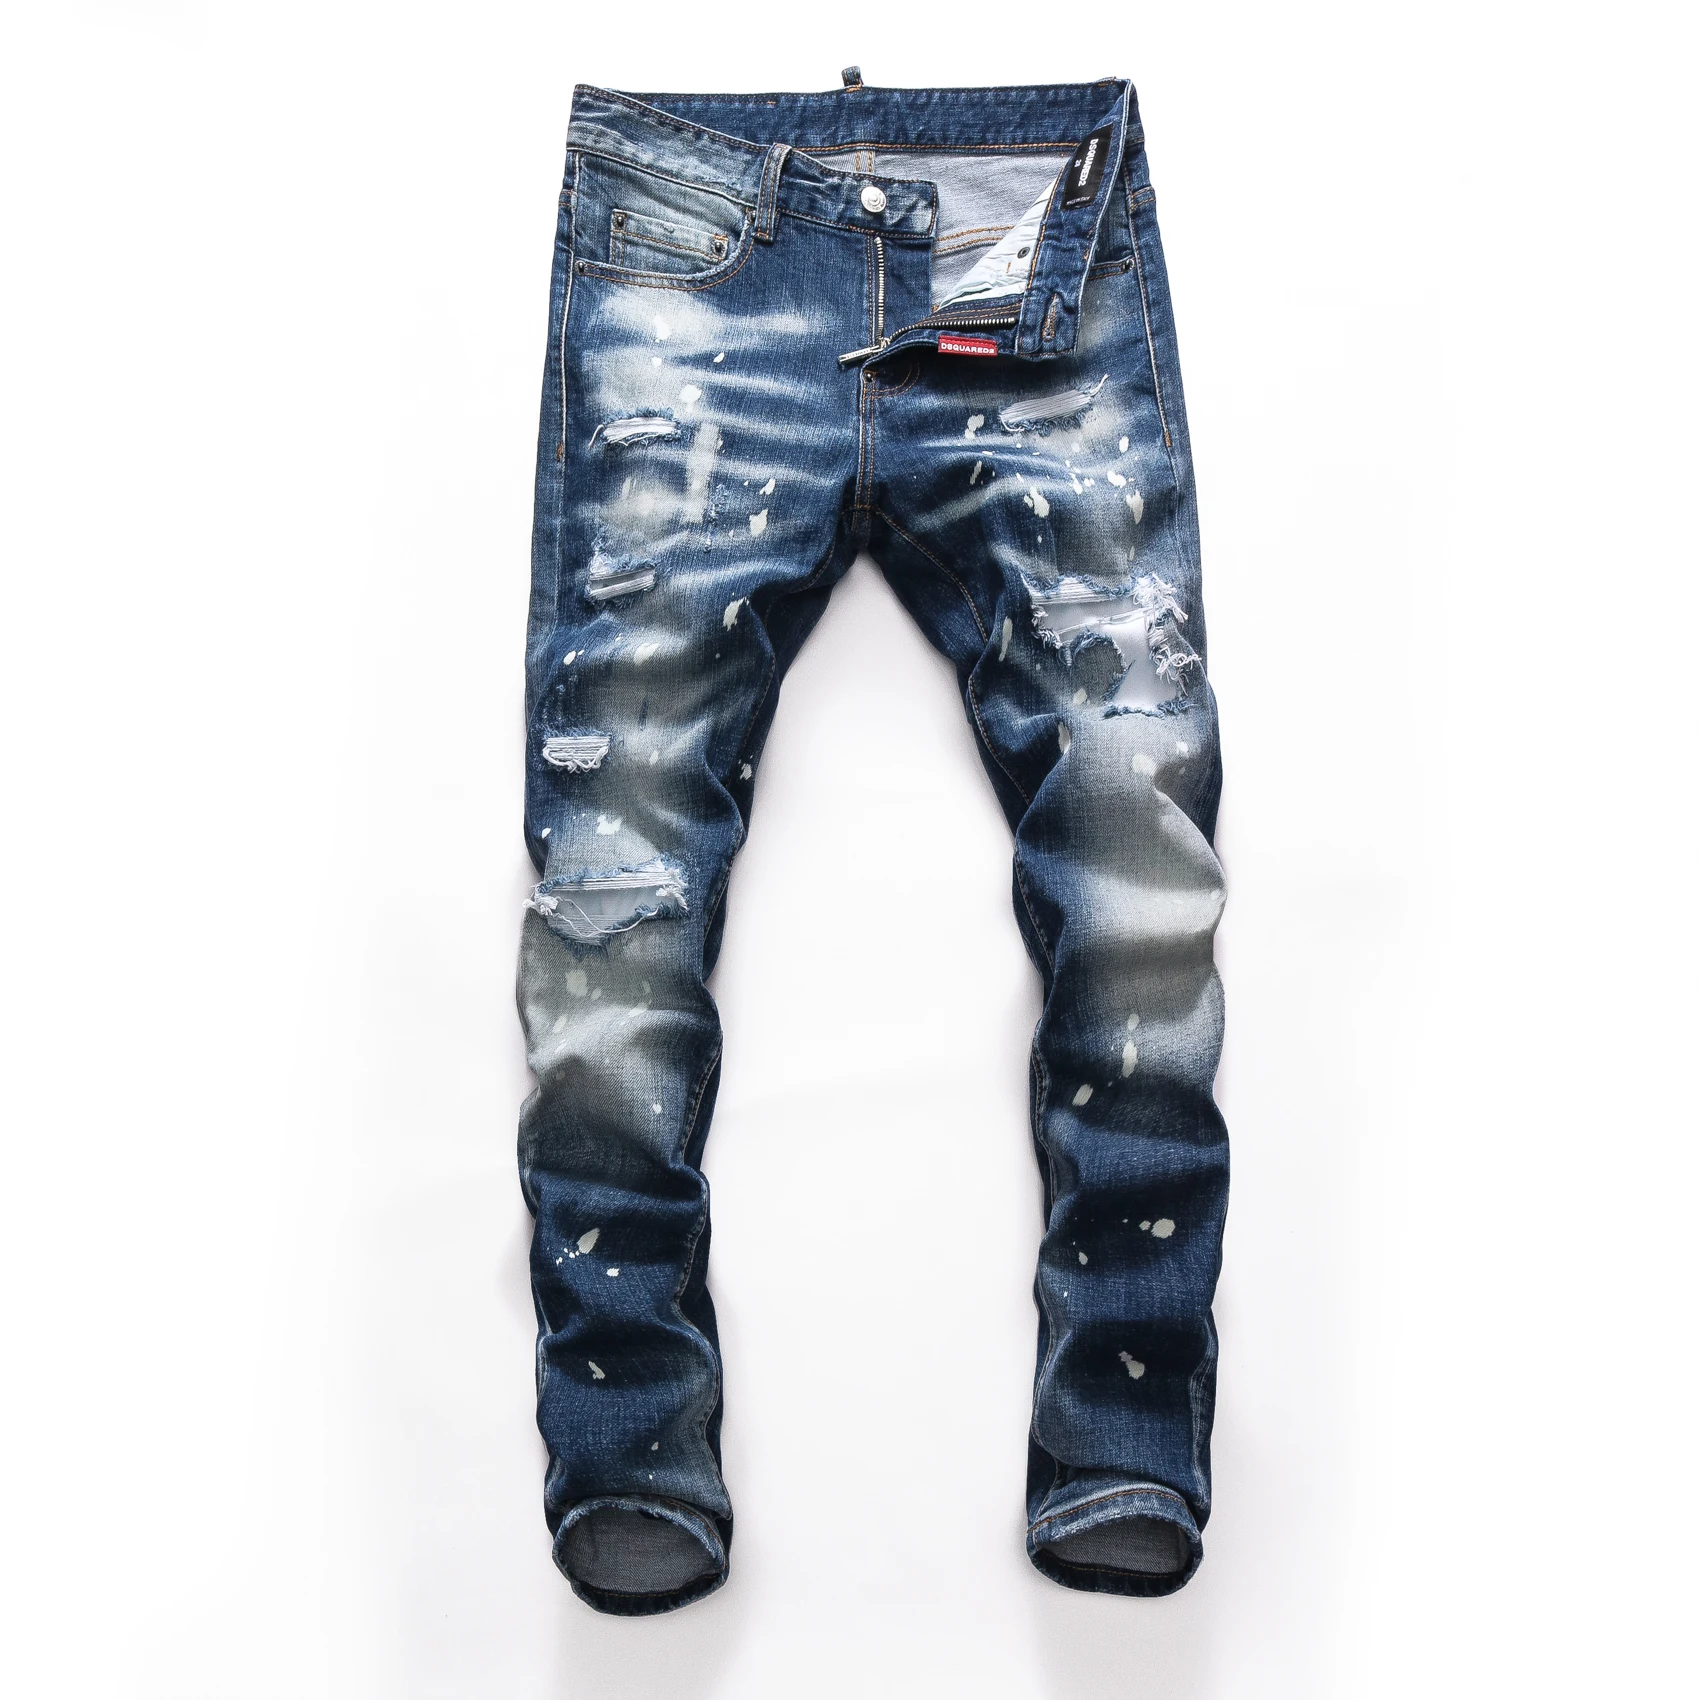 

Мужские синие джинсы-скинни ICON Dsq2, весенние однотонные тонкие джинсовые джинсы, ковбойские брюки, мужские хлопковые эластичные длинные джи...